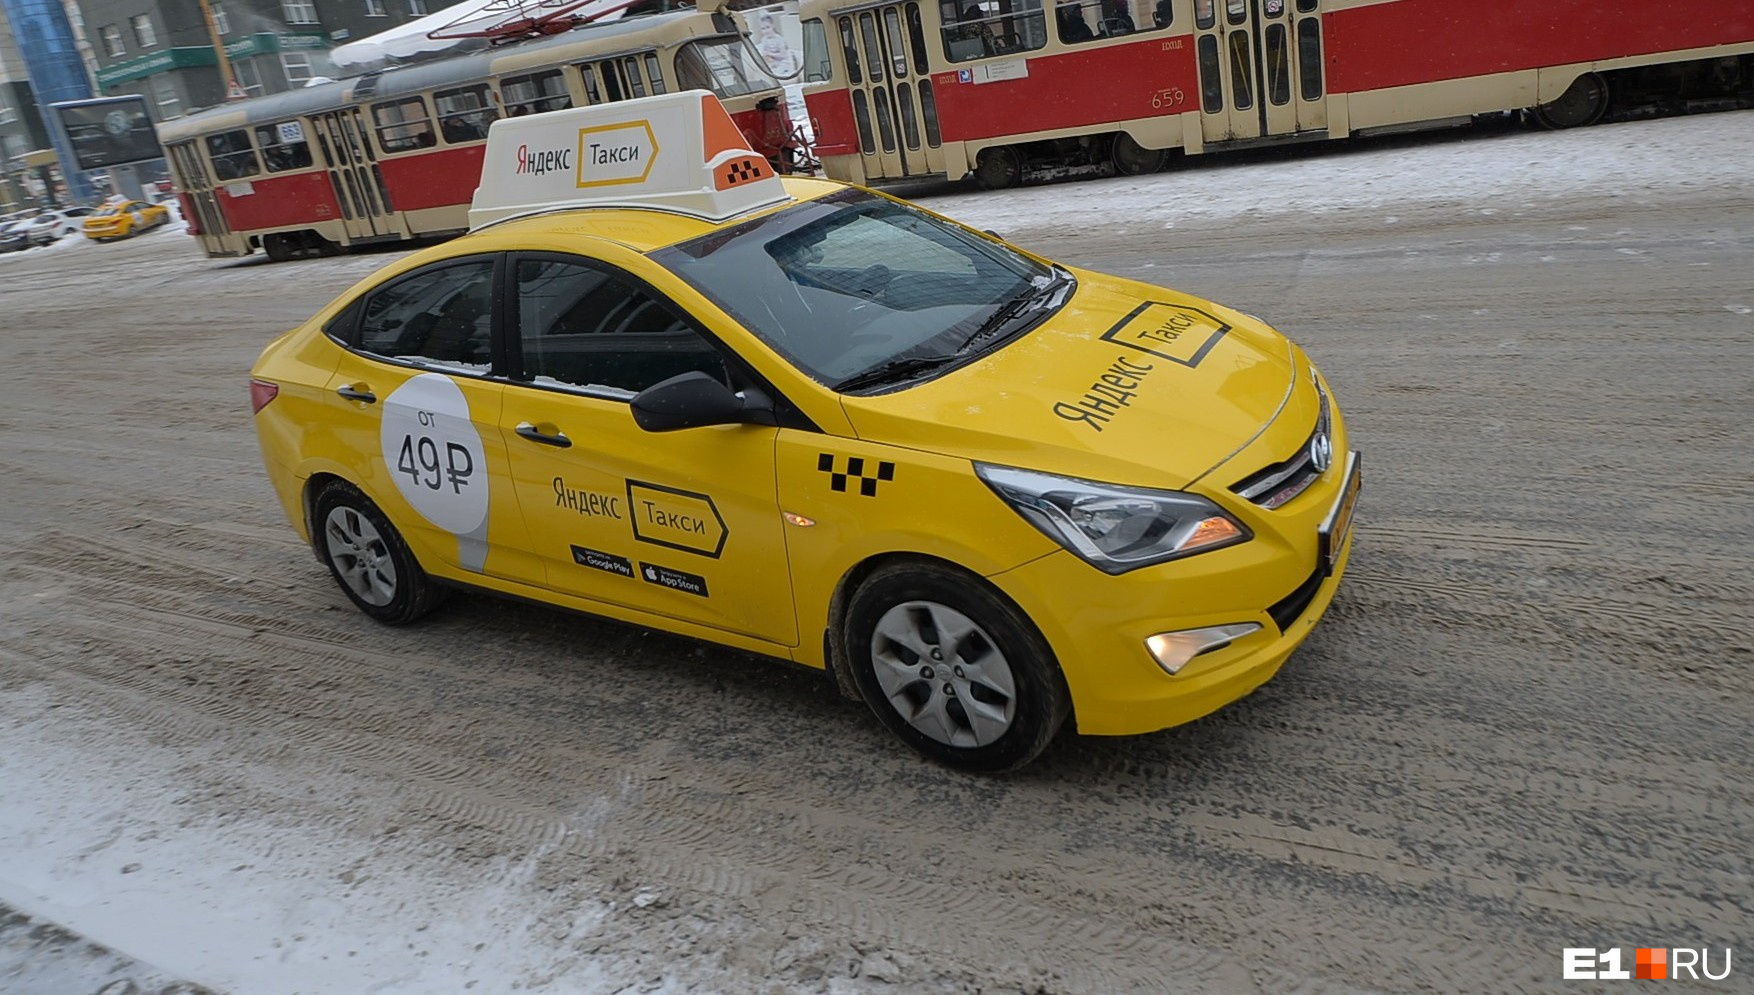 «Такси — это роскошь». В Екатеринбурге шоферы поспорили с пассажирами о дорогущих поездках в пробках